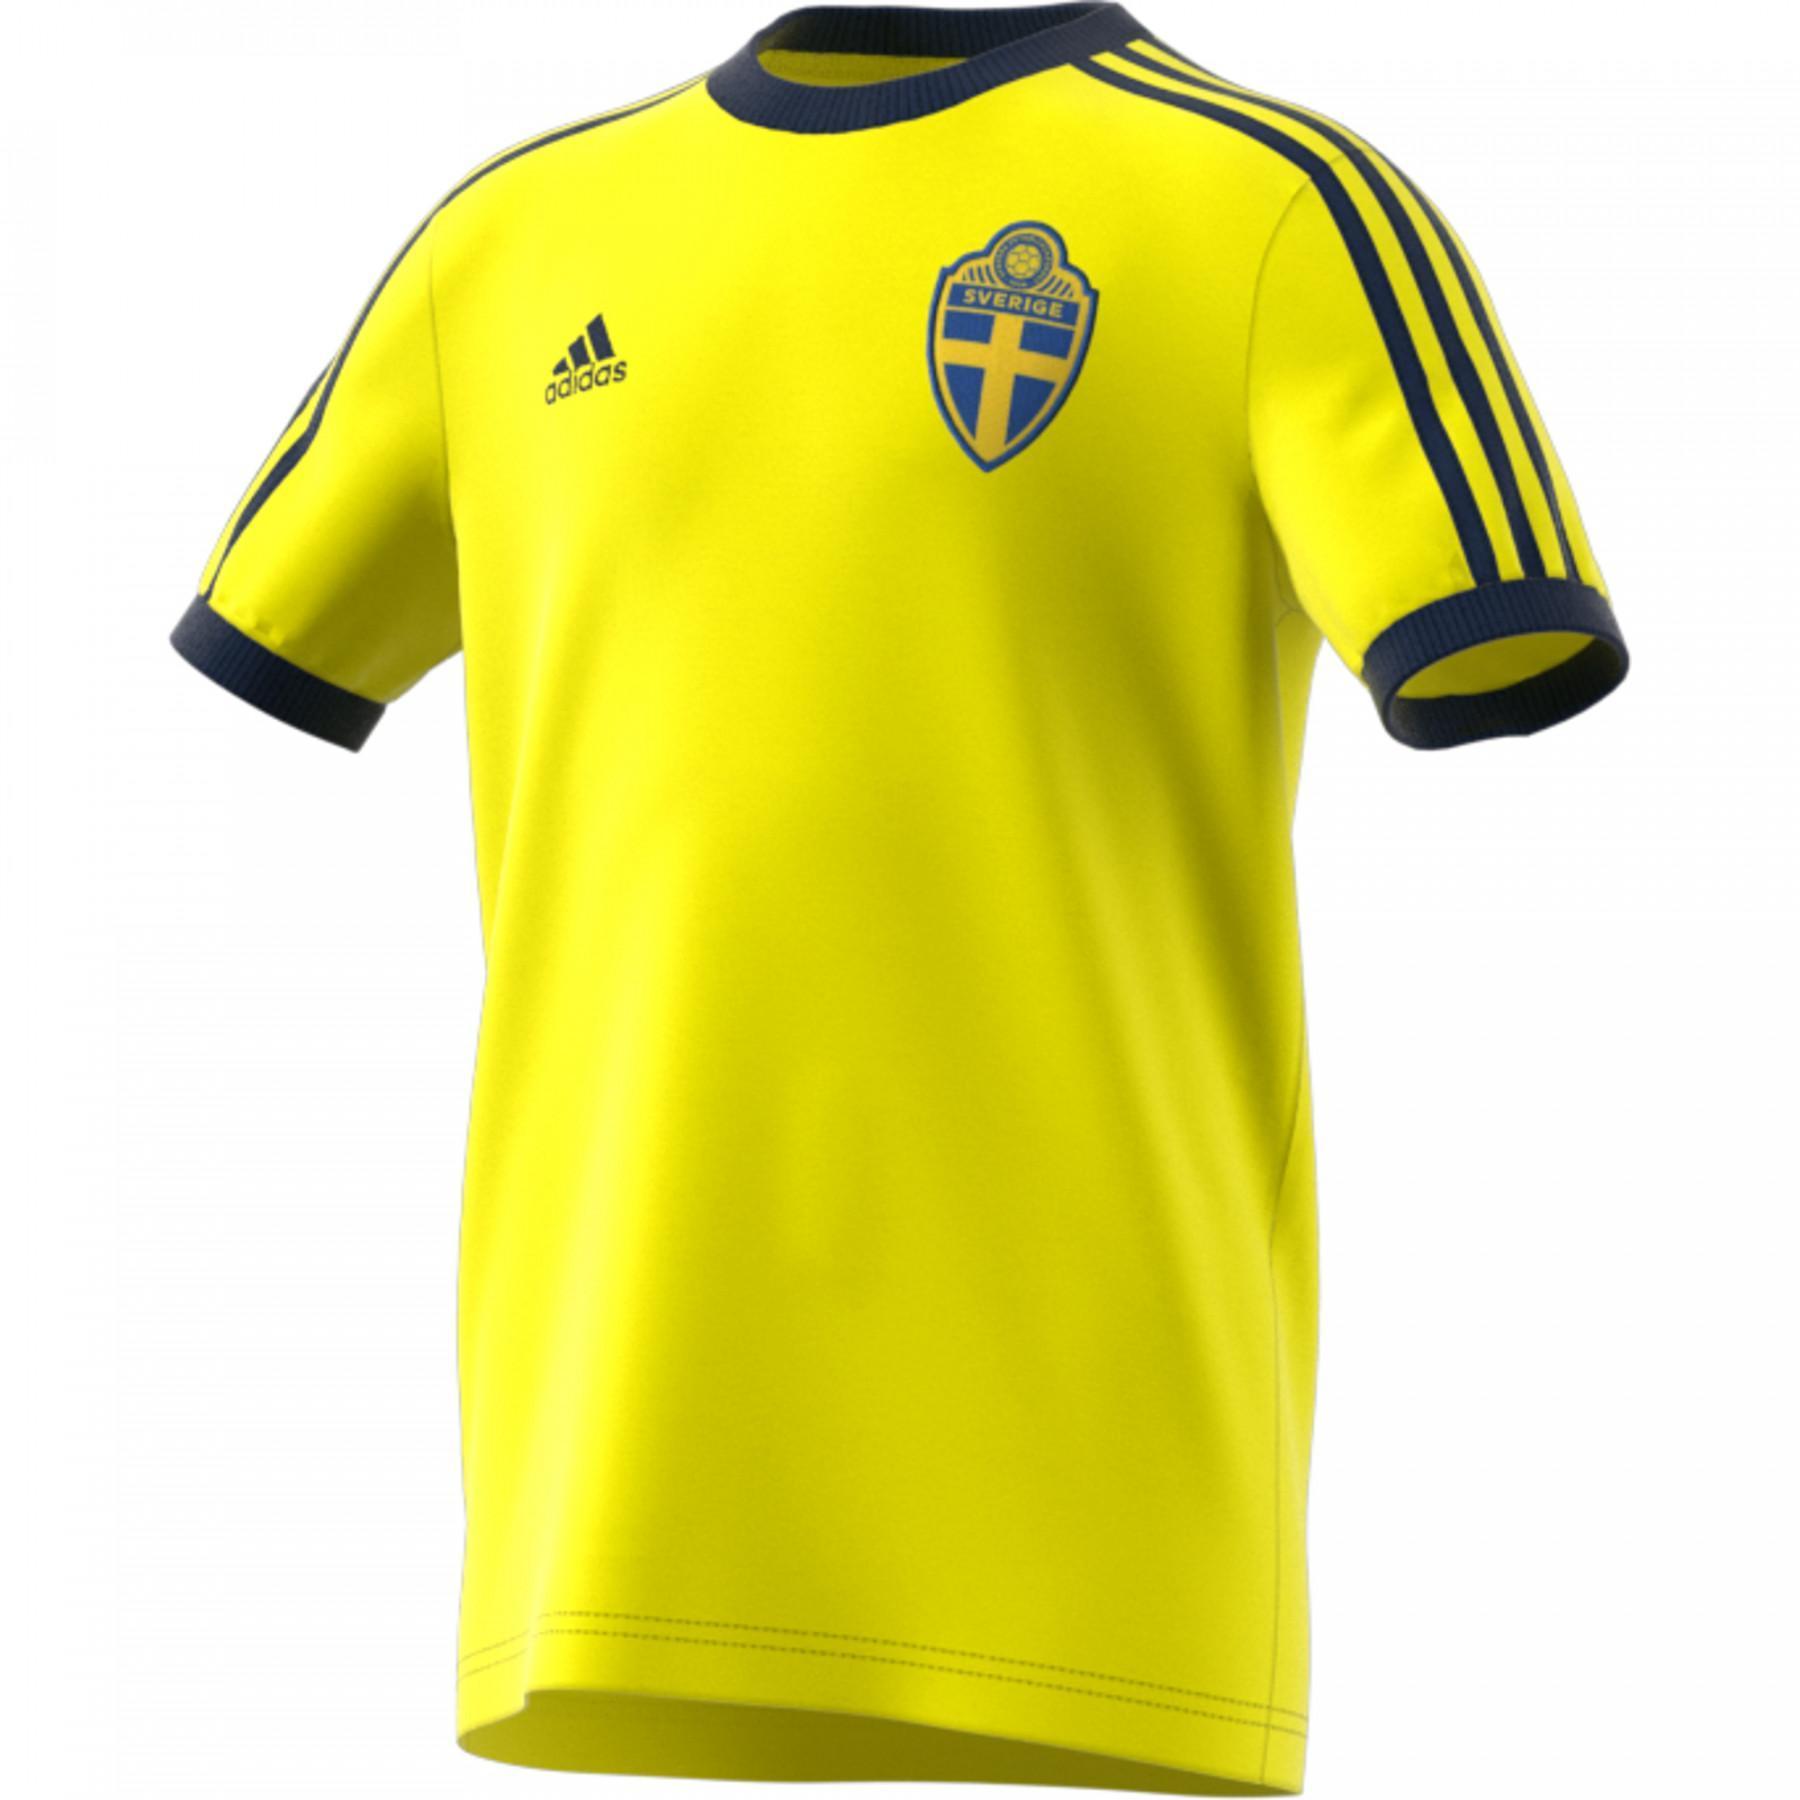 Child's T-shirt Suède 3-Stripes 2020